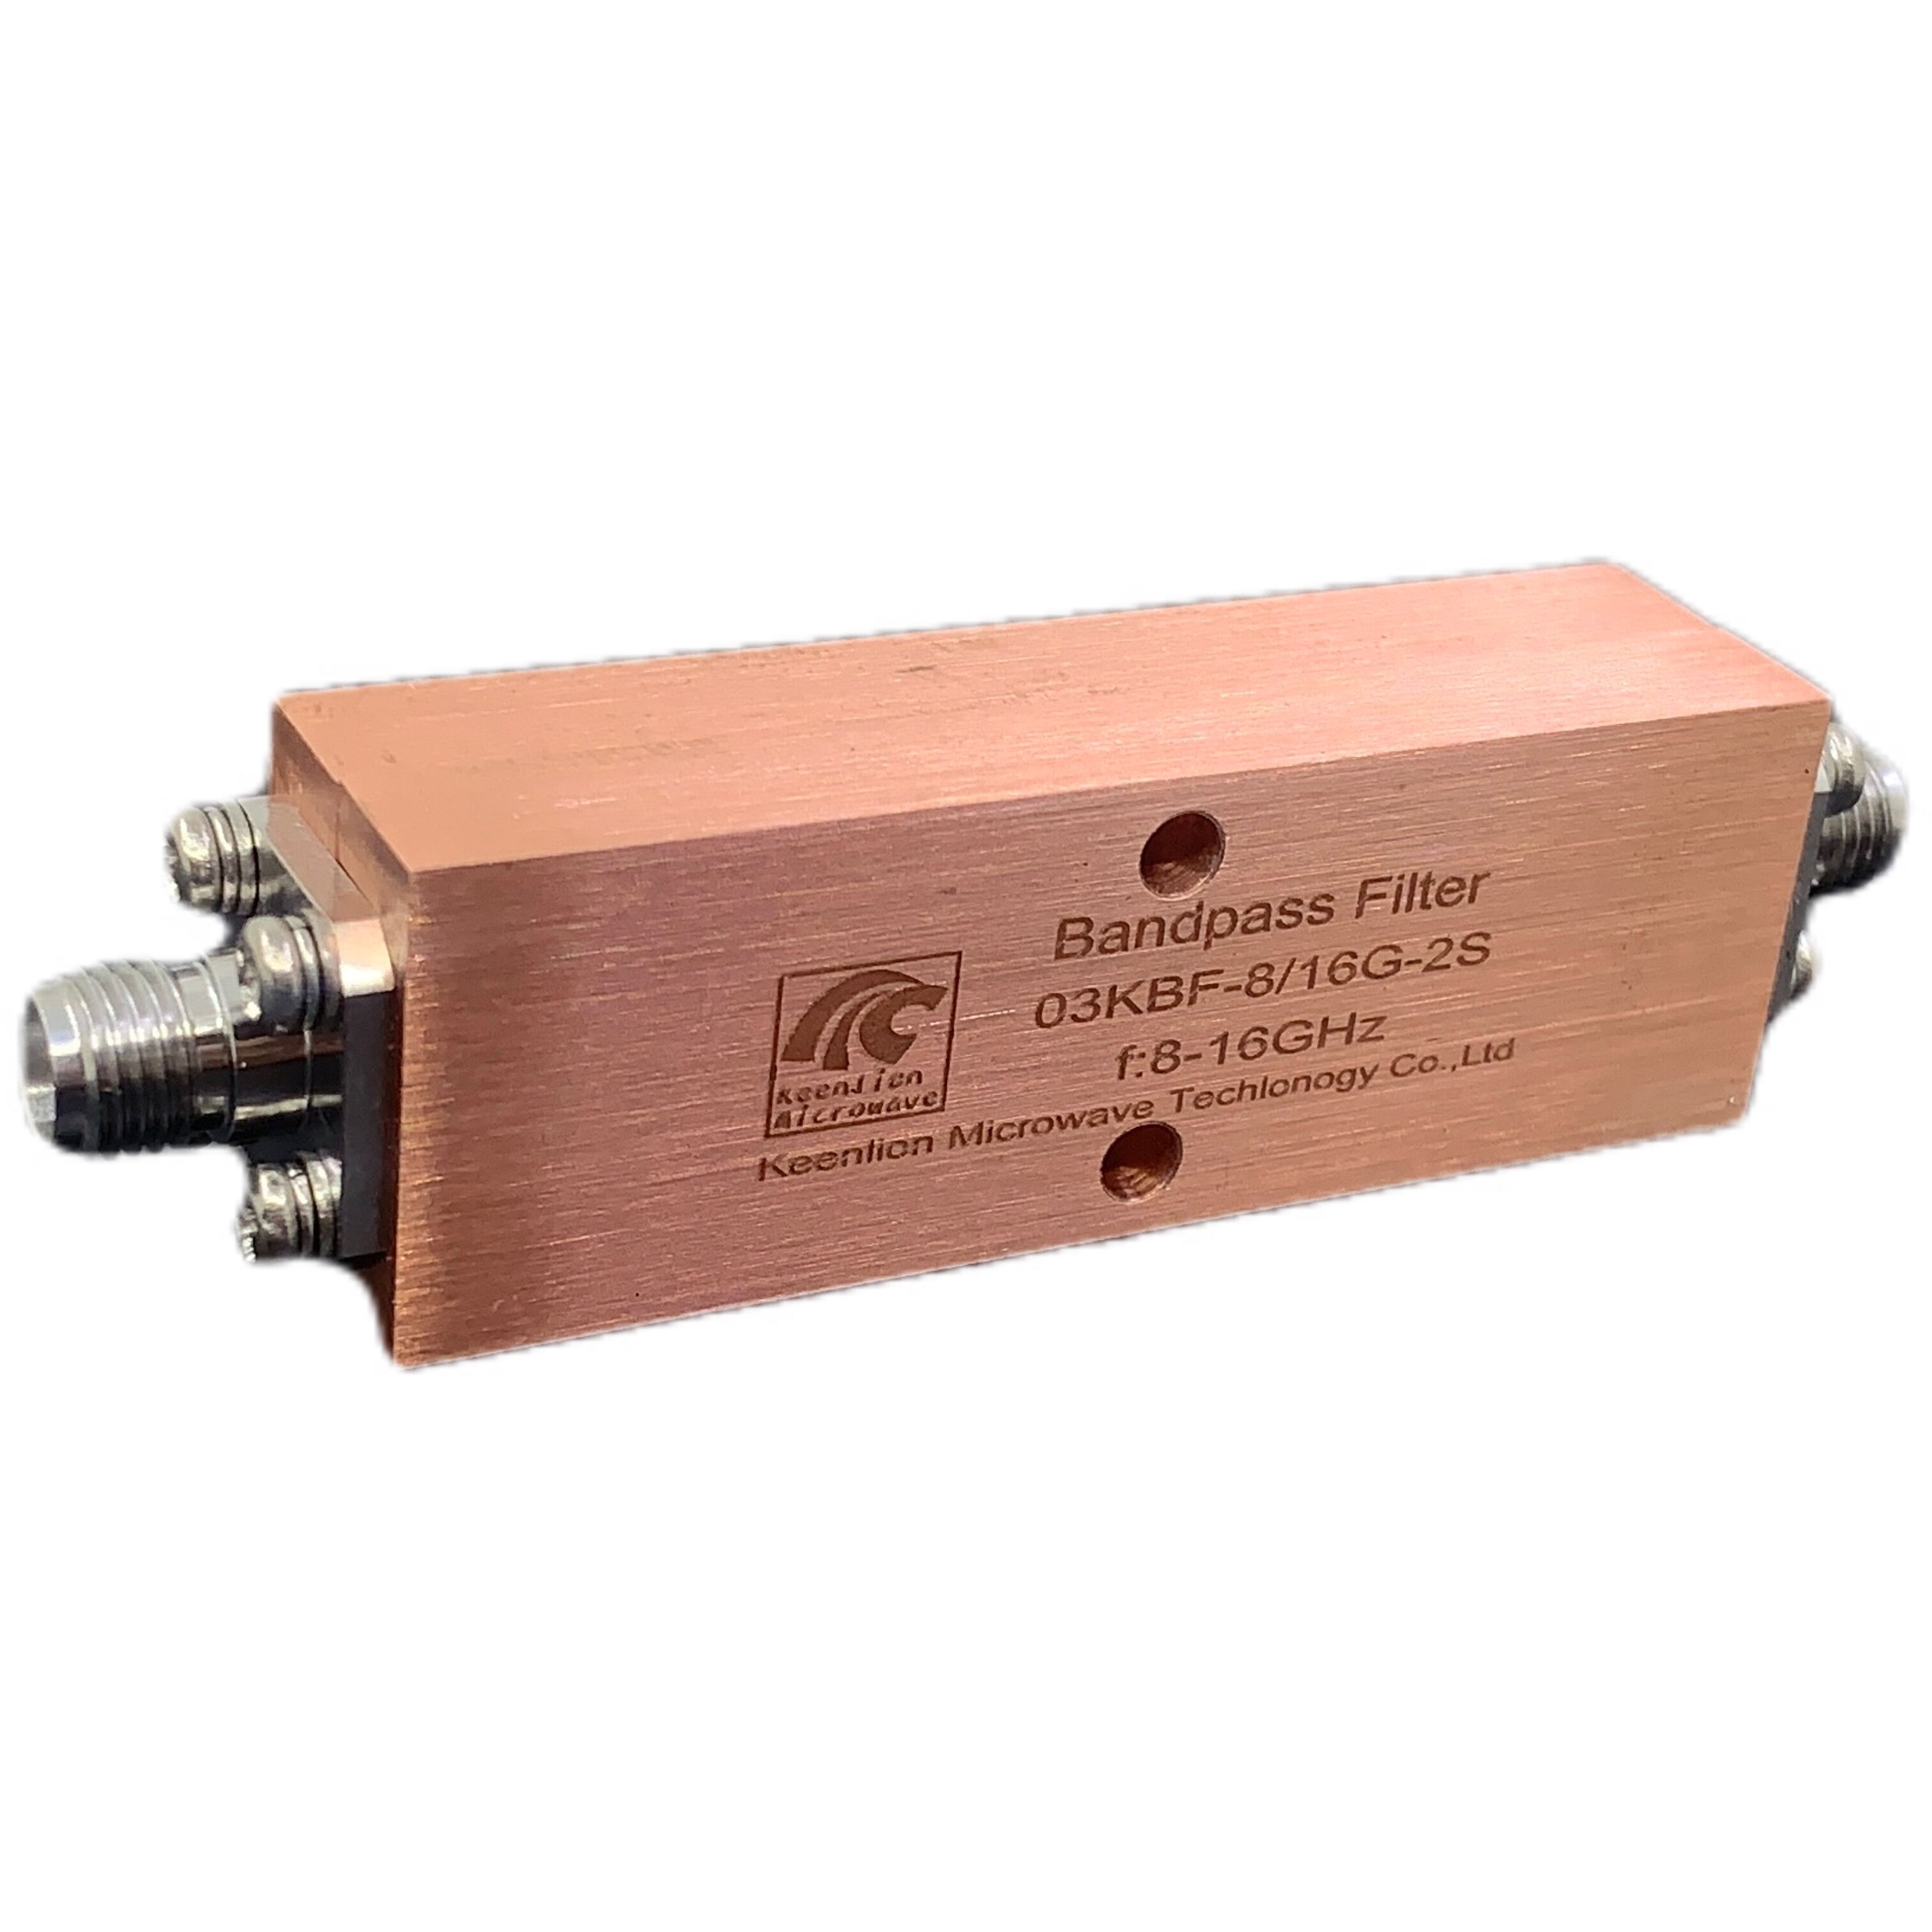 8-16GHZ 通带滤波器 用于无线电中继器的 UHF 带通腔滤波器